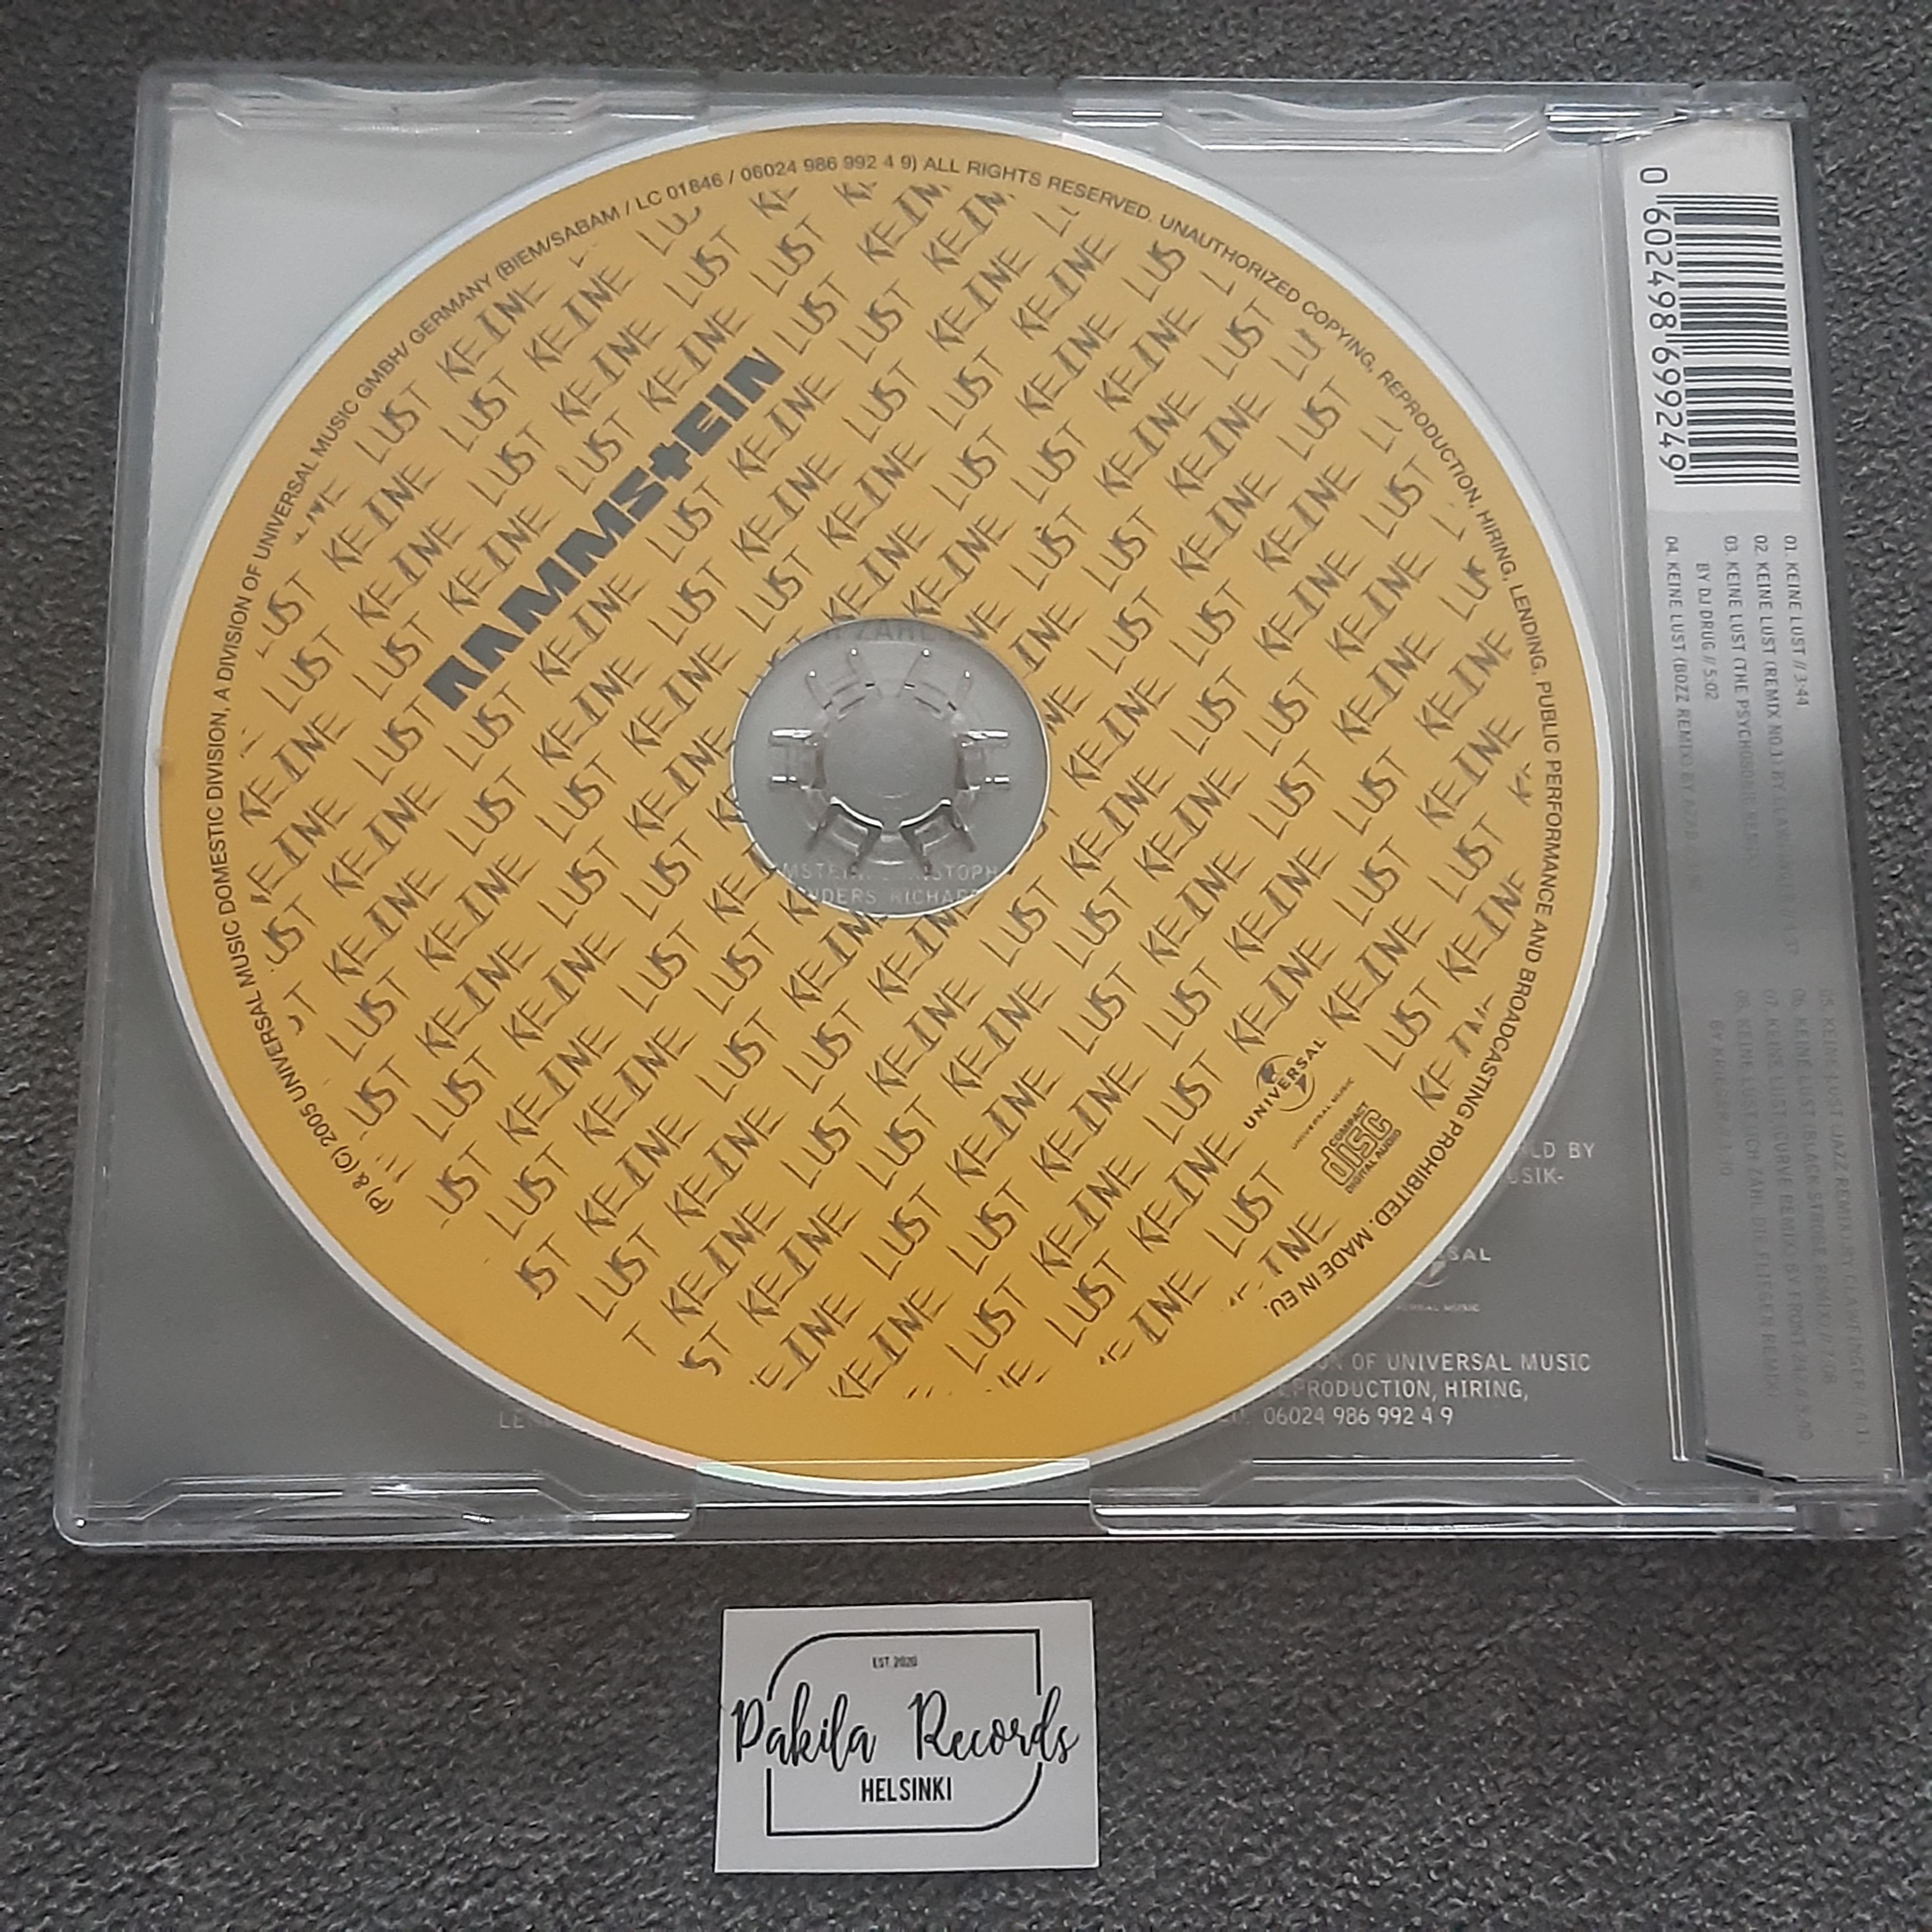 Rammstein - Keine Lust - CDS (käytetty)